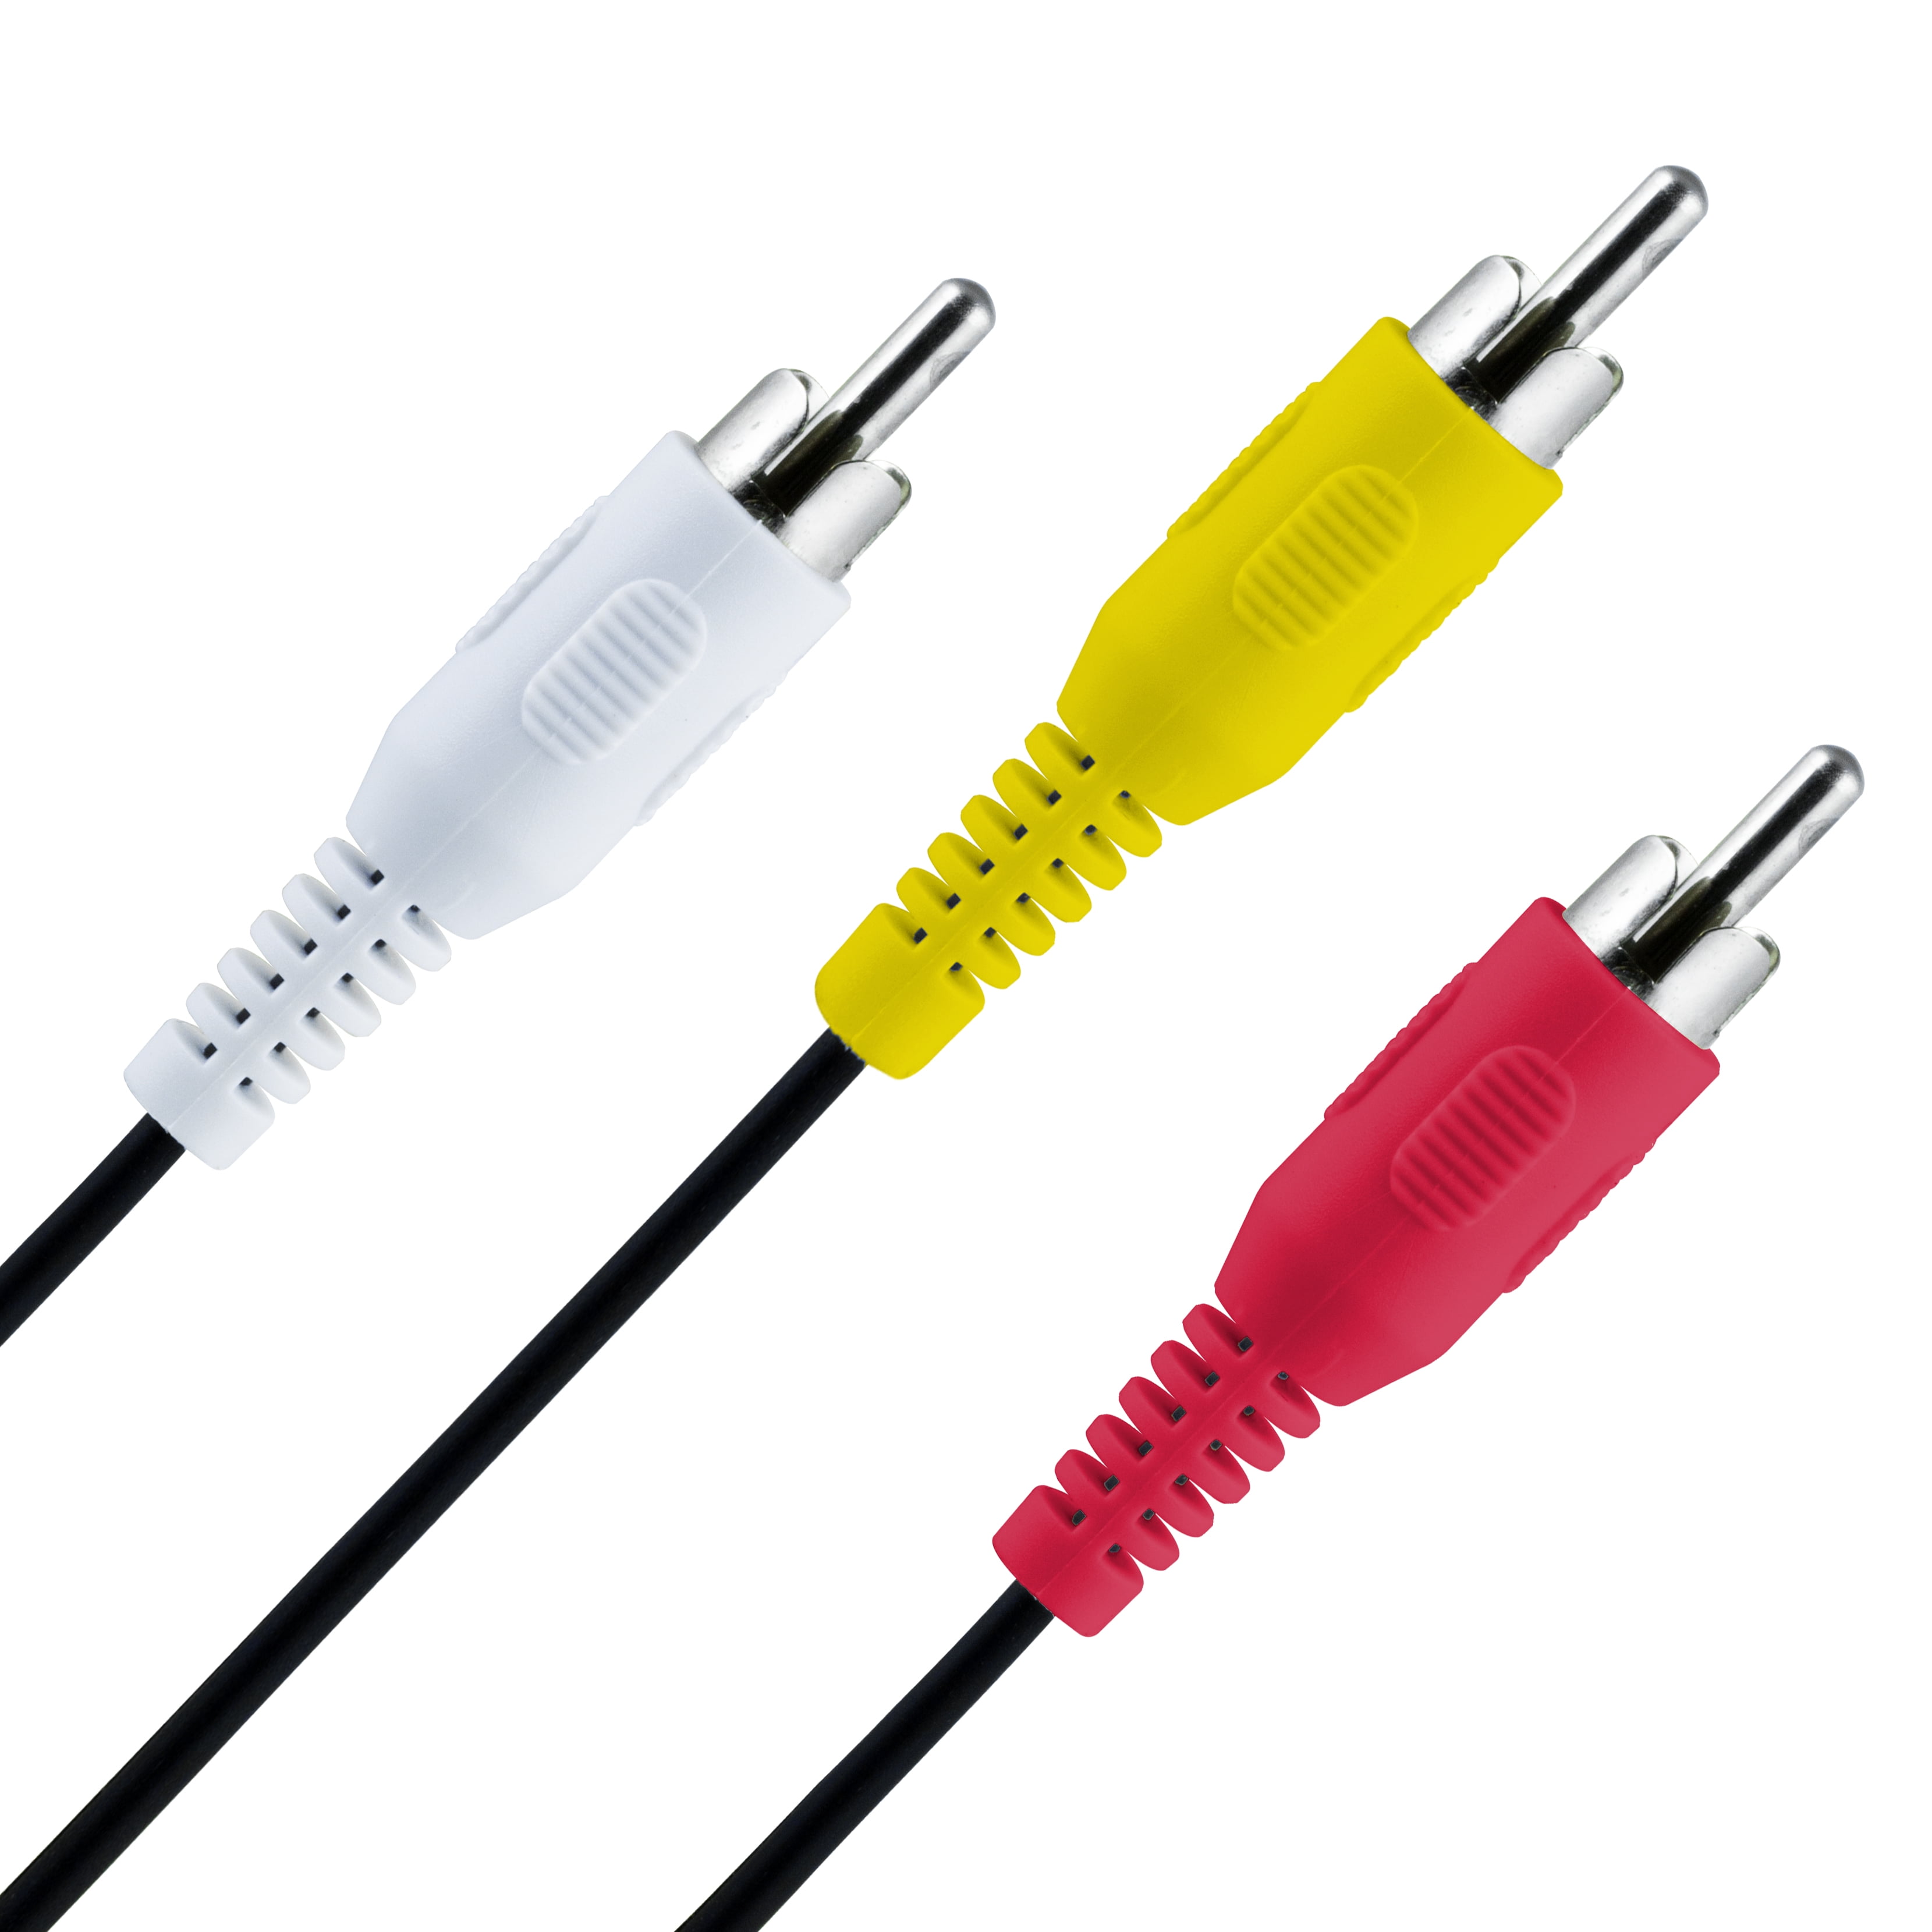 onn. 6ft A/V Composite Cable, RCA Connectors, 100008650